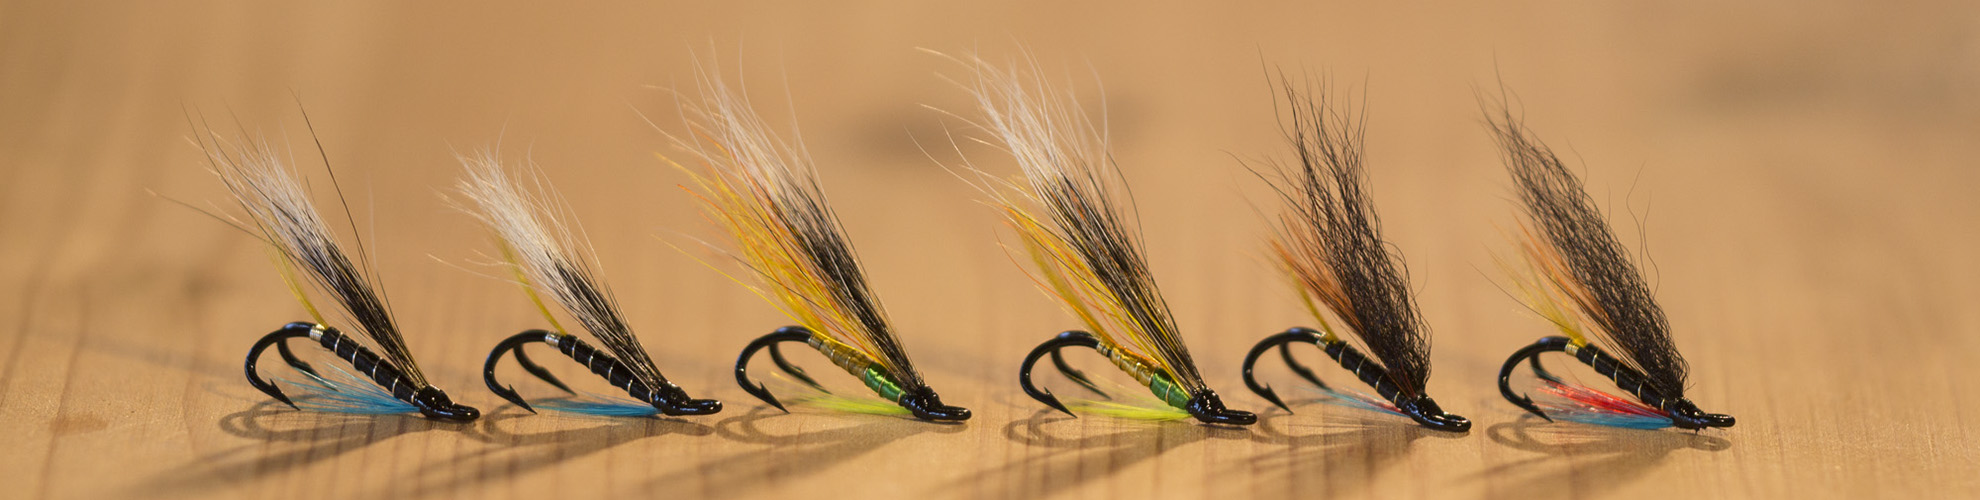 Rosen-fly-fishing-blog-00012